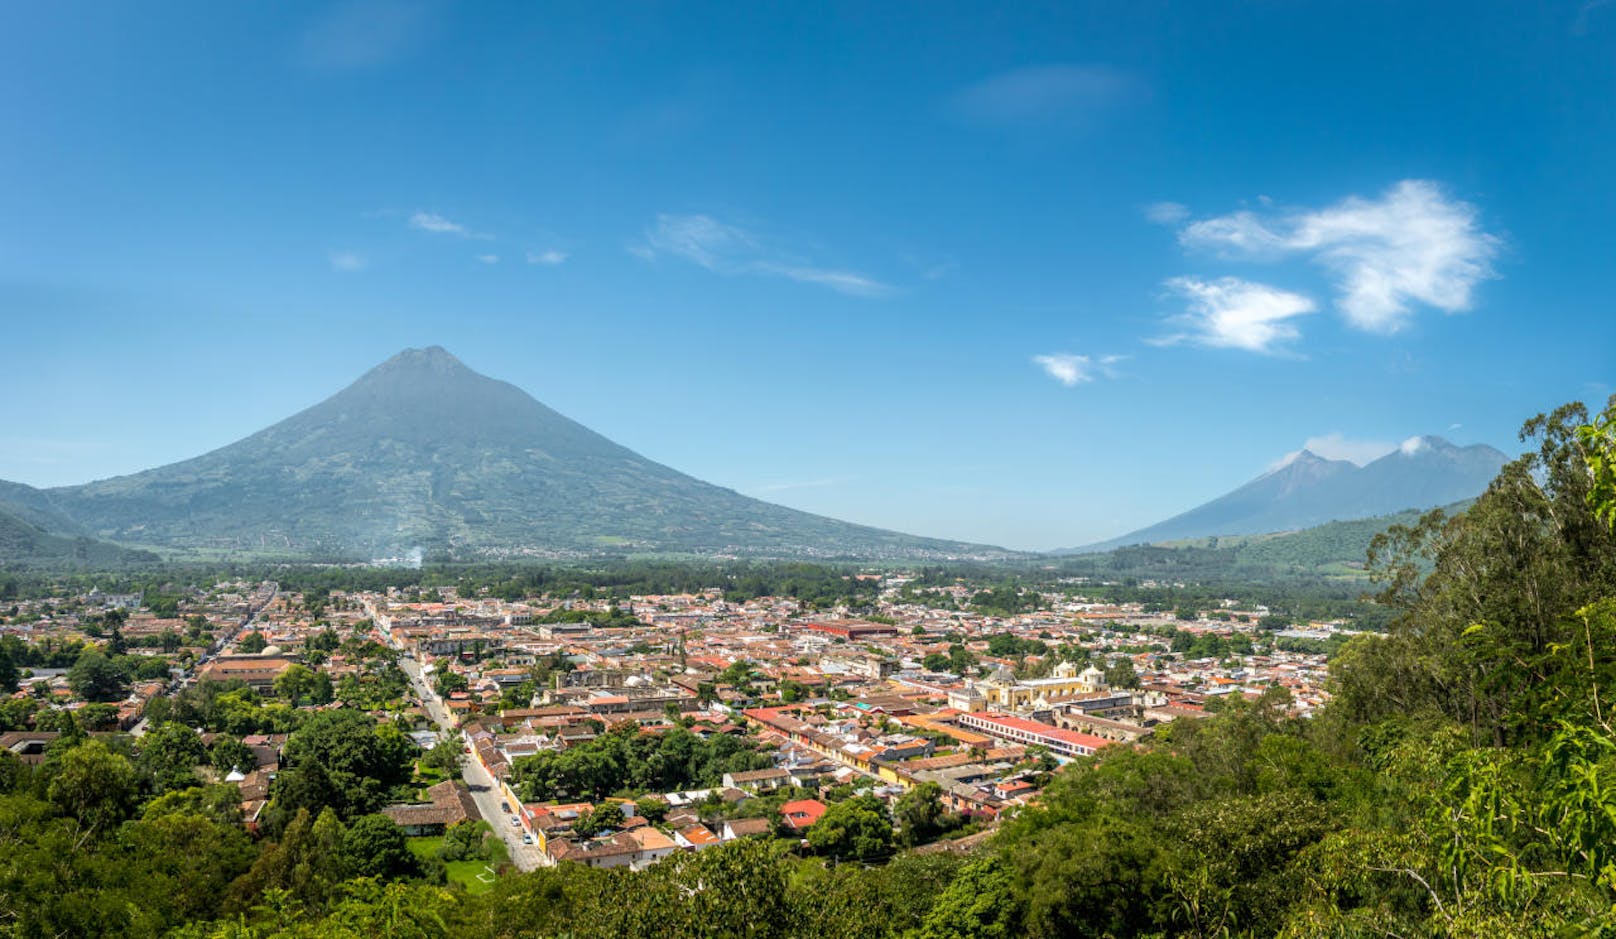 <b>Guatemala</b> ist ein wunderschönes Land, gilt allerdings auch als nicht ganz ungefährlich. Zur eigenen Sicherheit solltet ihr lieber Guatemala-Stadt vermeiden, aber dafür könnt ihr euch Antigua ansehen. Entweder die Stadt gefällt euch oder ihr werdet sie als Themenpark empfinden. Das zentralamerikanische Land ist allerdings sehr günstig und voll mit Sehenswürdigkeiten, die euch mit Sicherheit in Erstaunen versetzen werden.